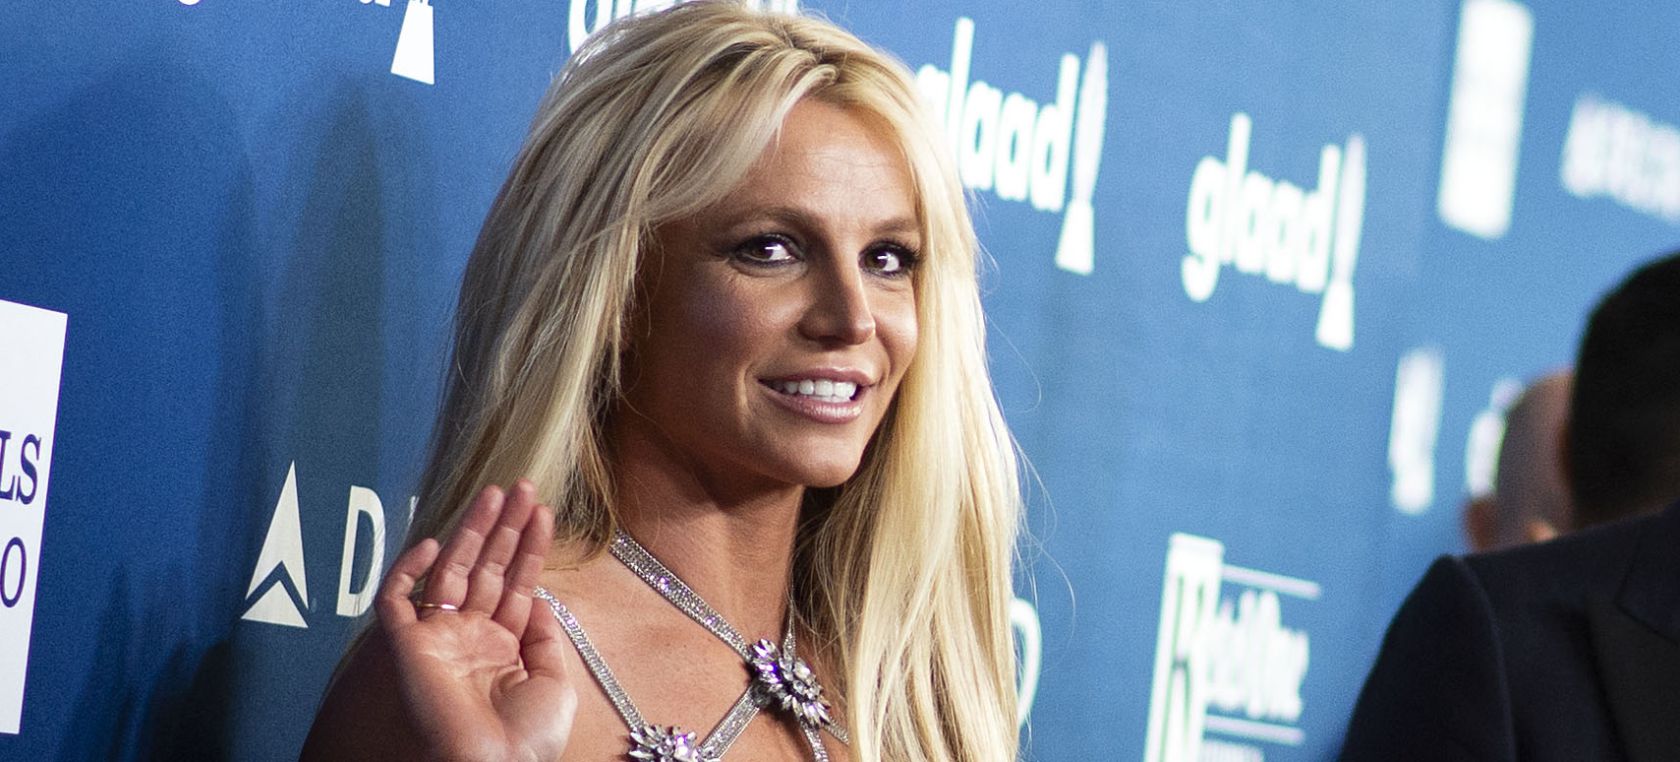 Britney Spears se tiñe de morado y no es la primera vez que se arriesga: así ha cambiado en los últimos años